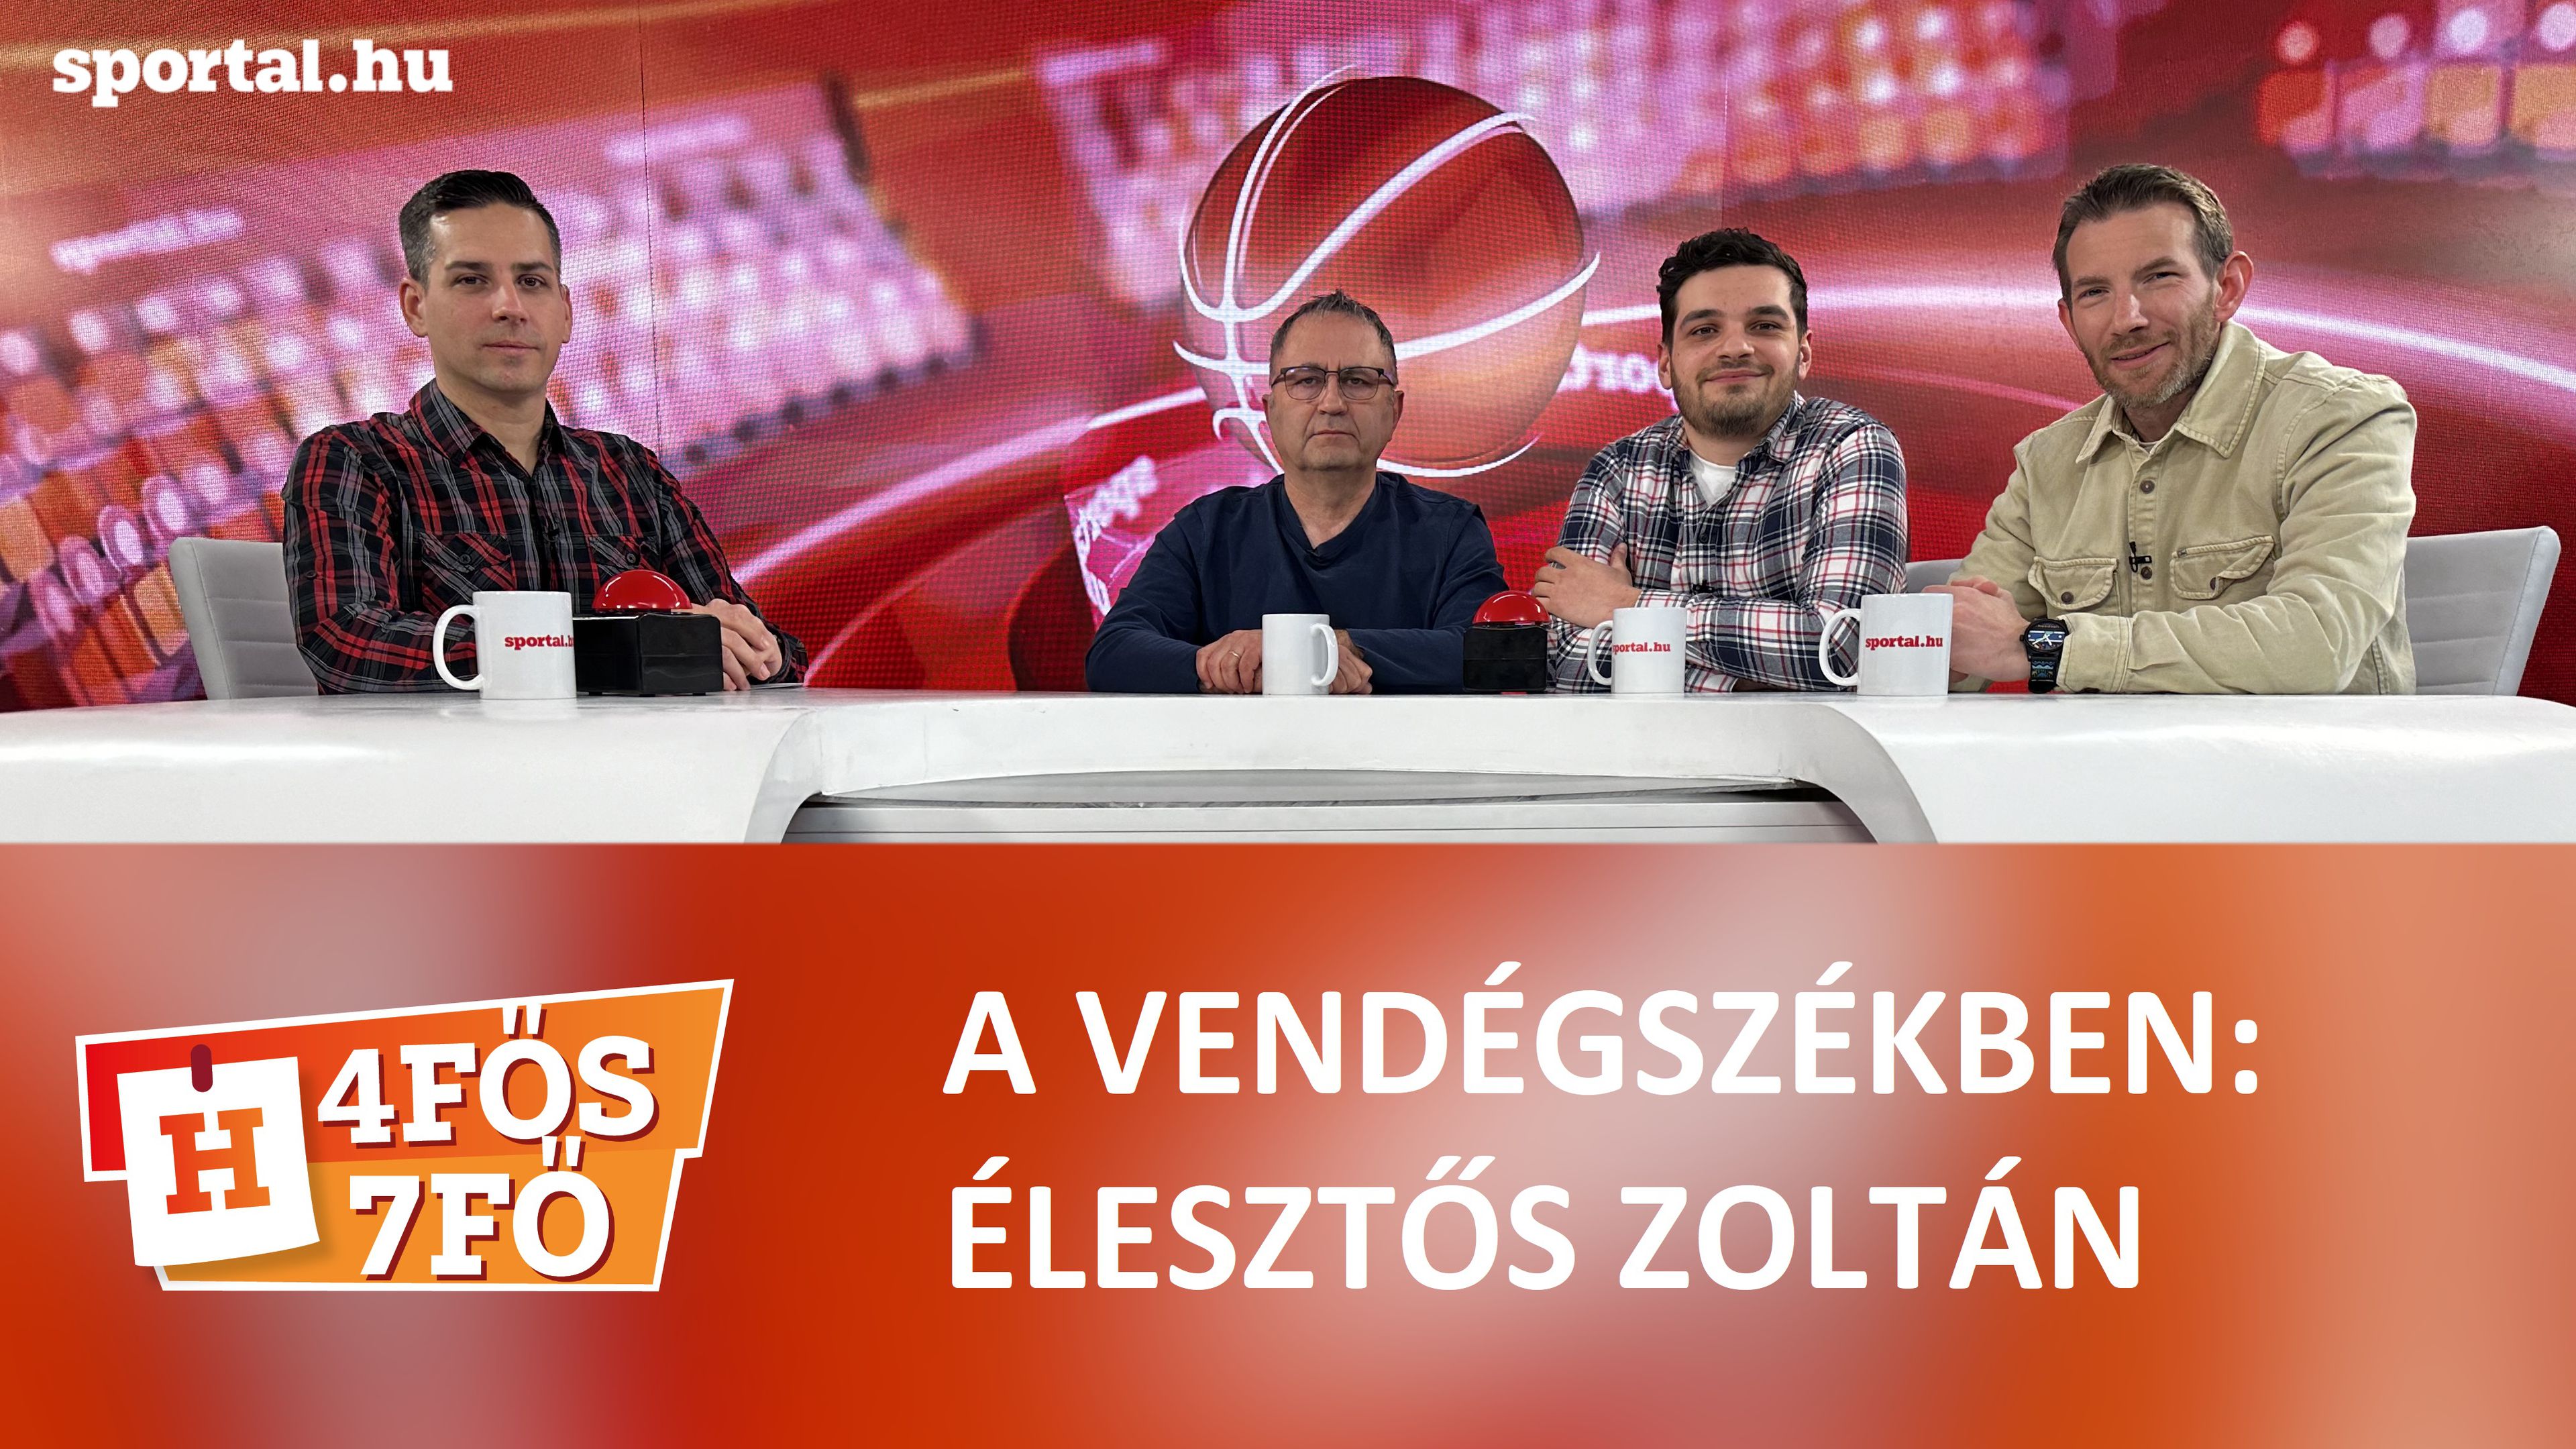 A Sportál Tv stúdiójában: Cselleng Ádám, Szekeres Tamás, Cseh Benjámin és Élesztős Zoltán